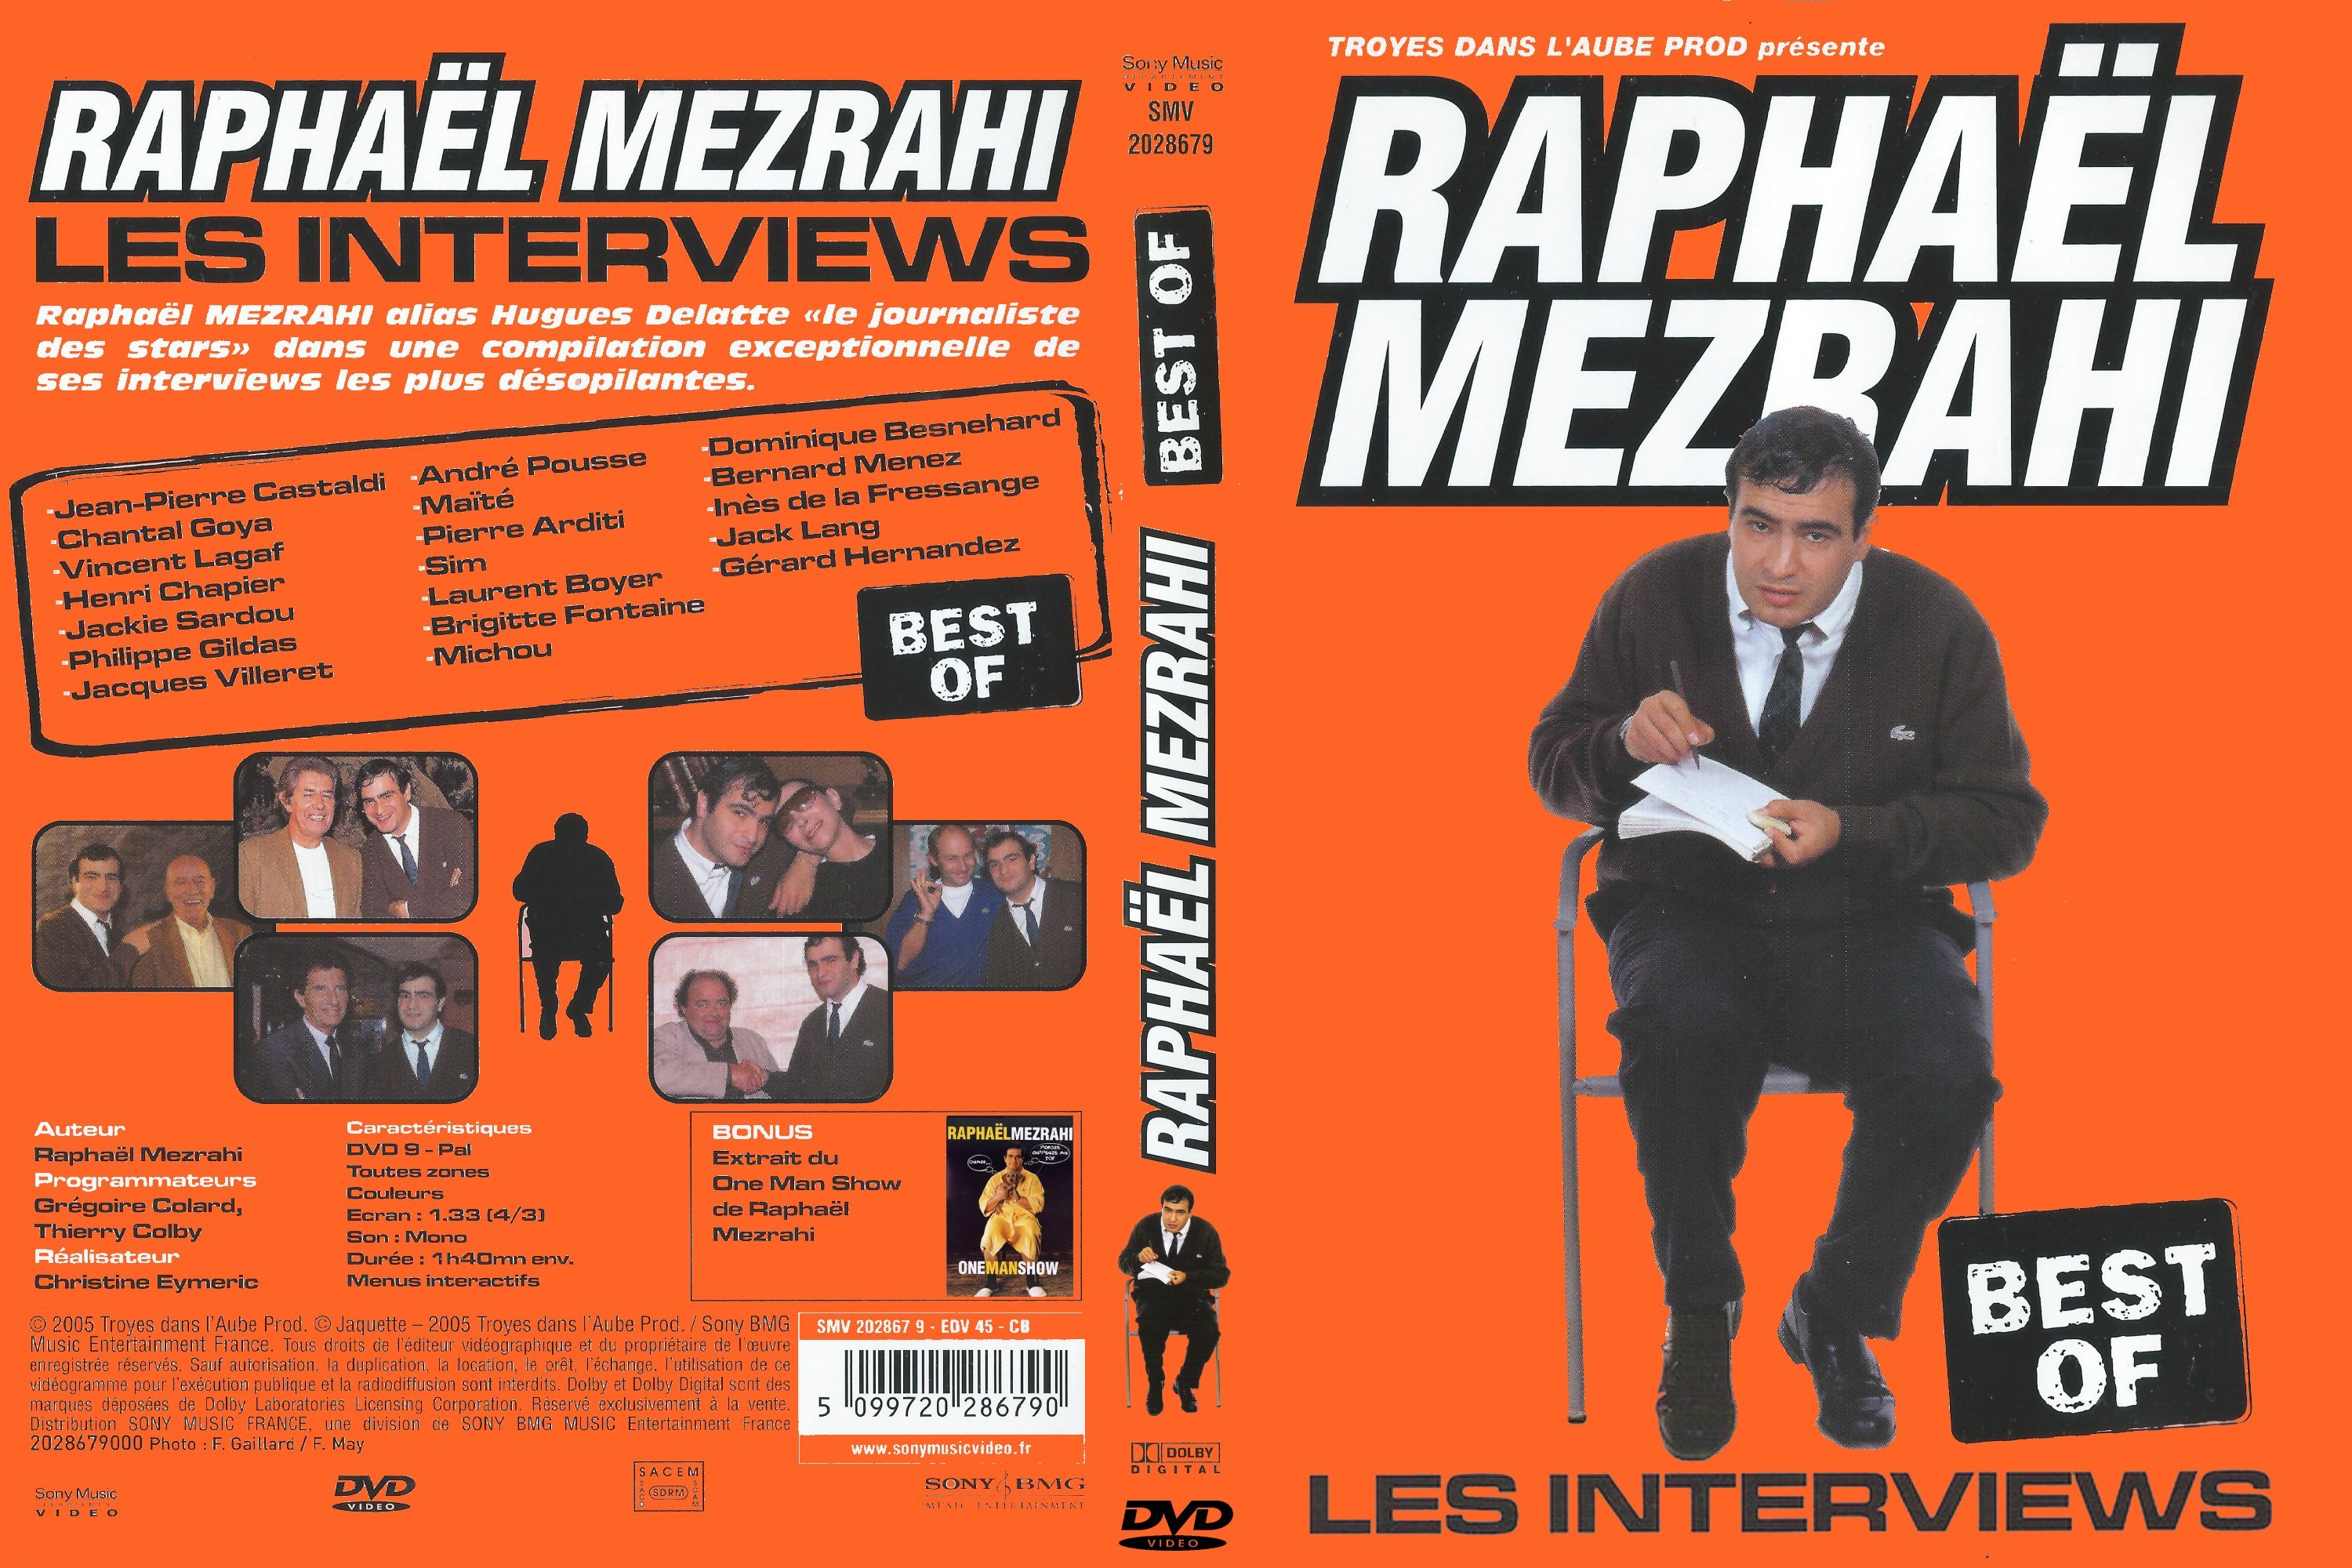 Jaquette DVD Raphael Mezrahi Les Interviews Best of